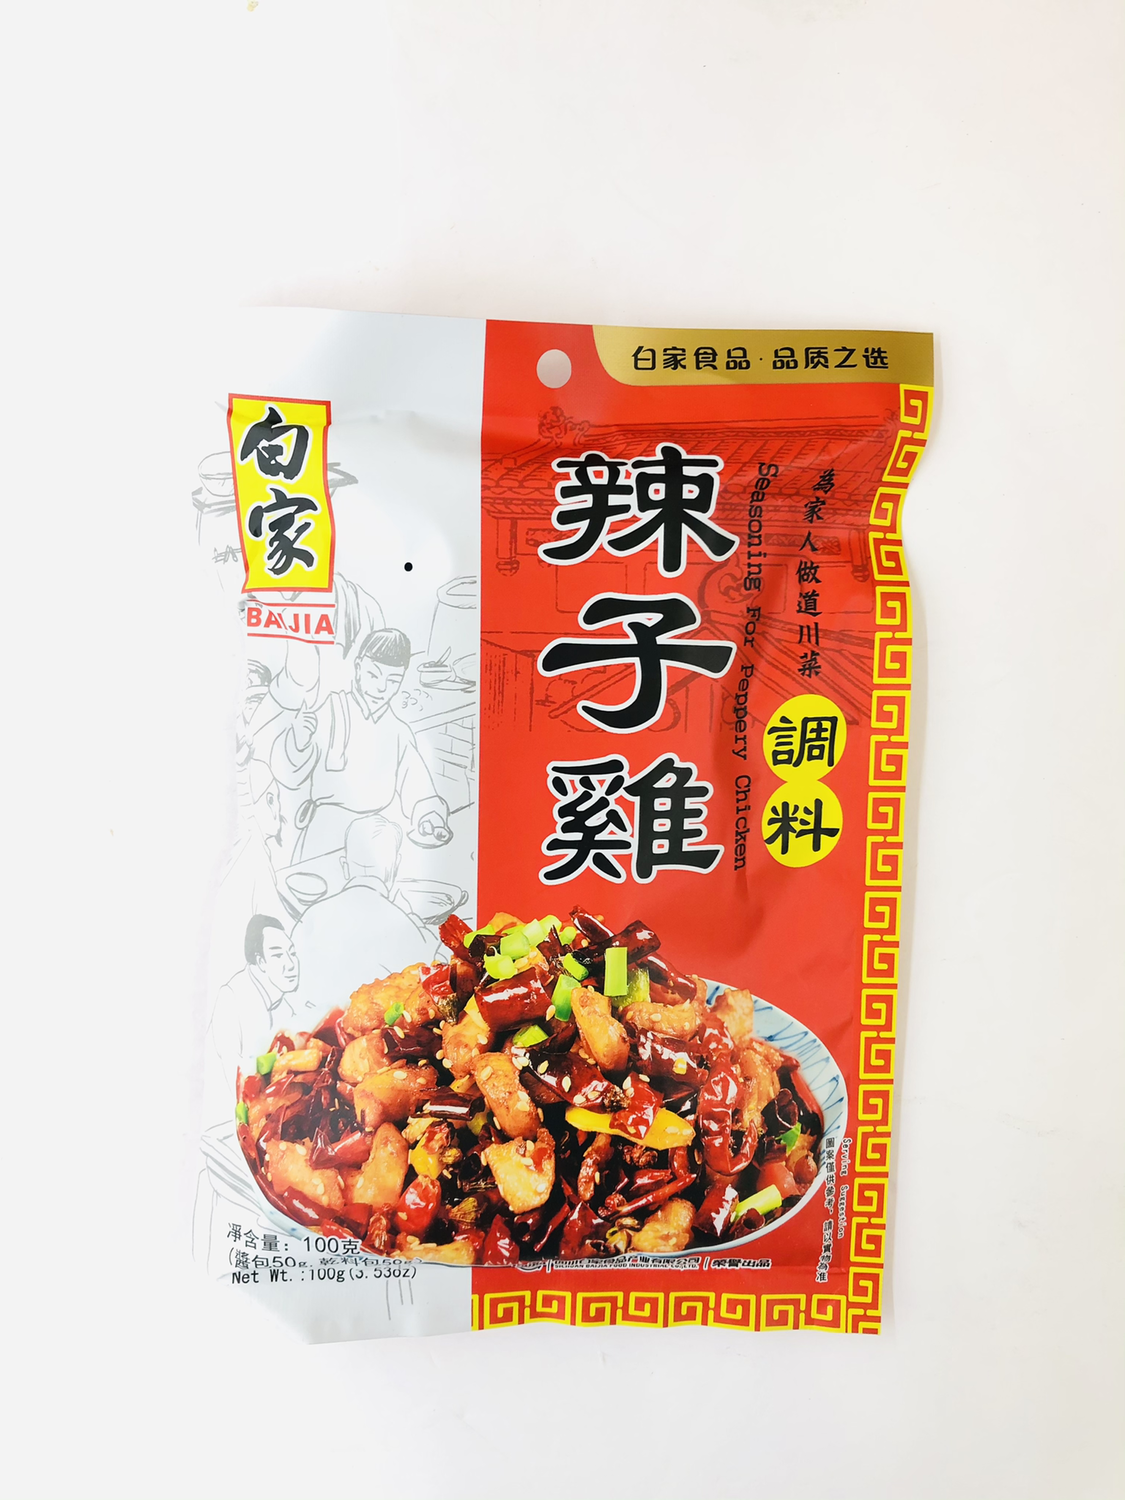 白家 辣子鸡调料 BAIJIA Seasoning for Peppery Chicken 100g(3.53oz)